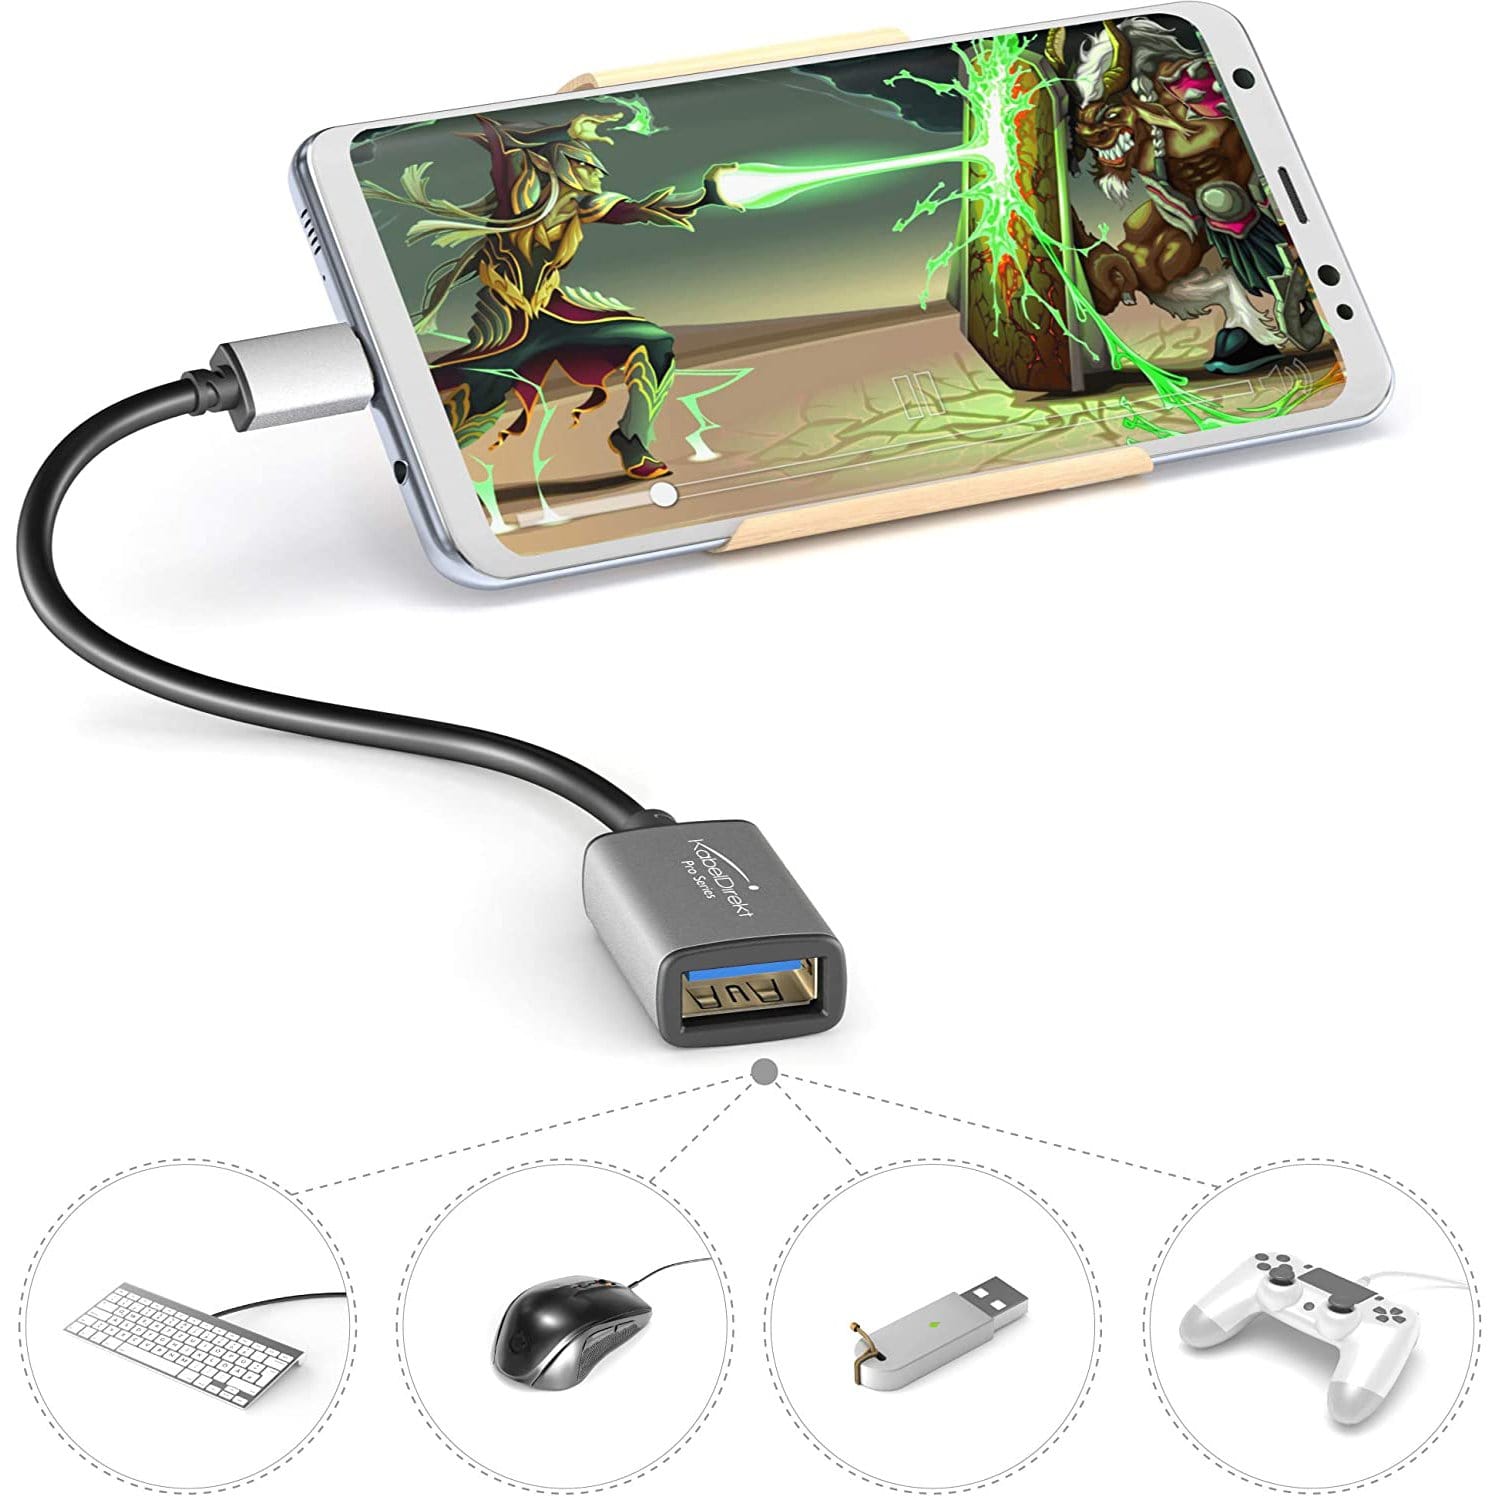 handling oprejst Kejser USB-C OTG cable – Connect USB-A devices with your tablet or smartphone –  KabelDirekt